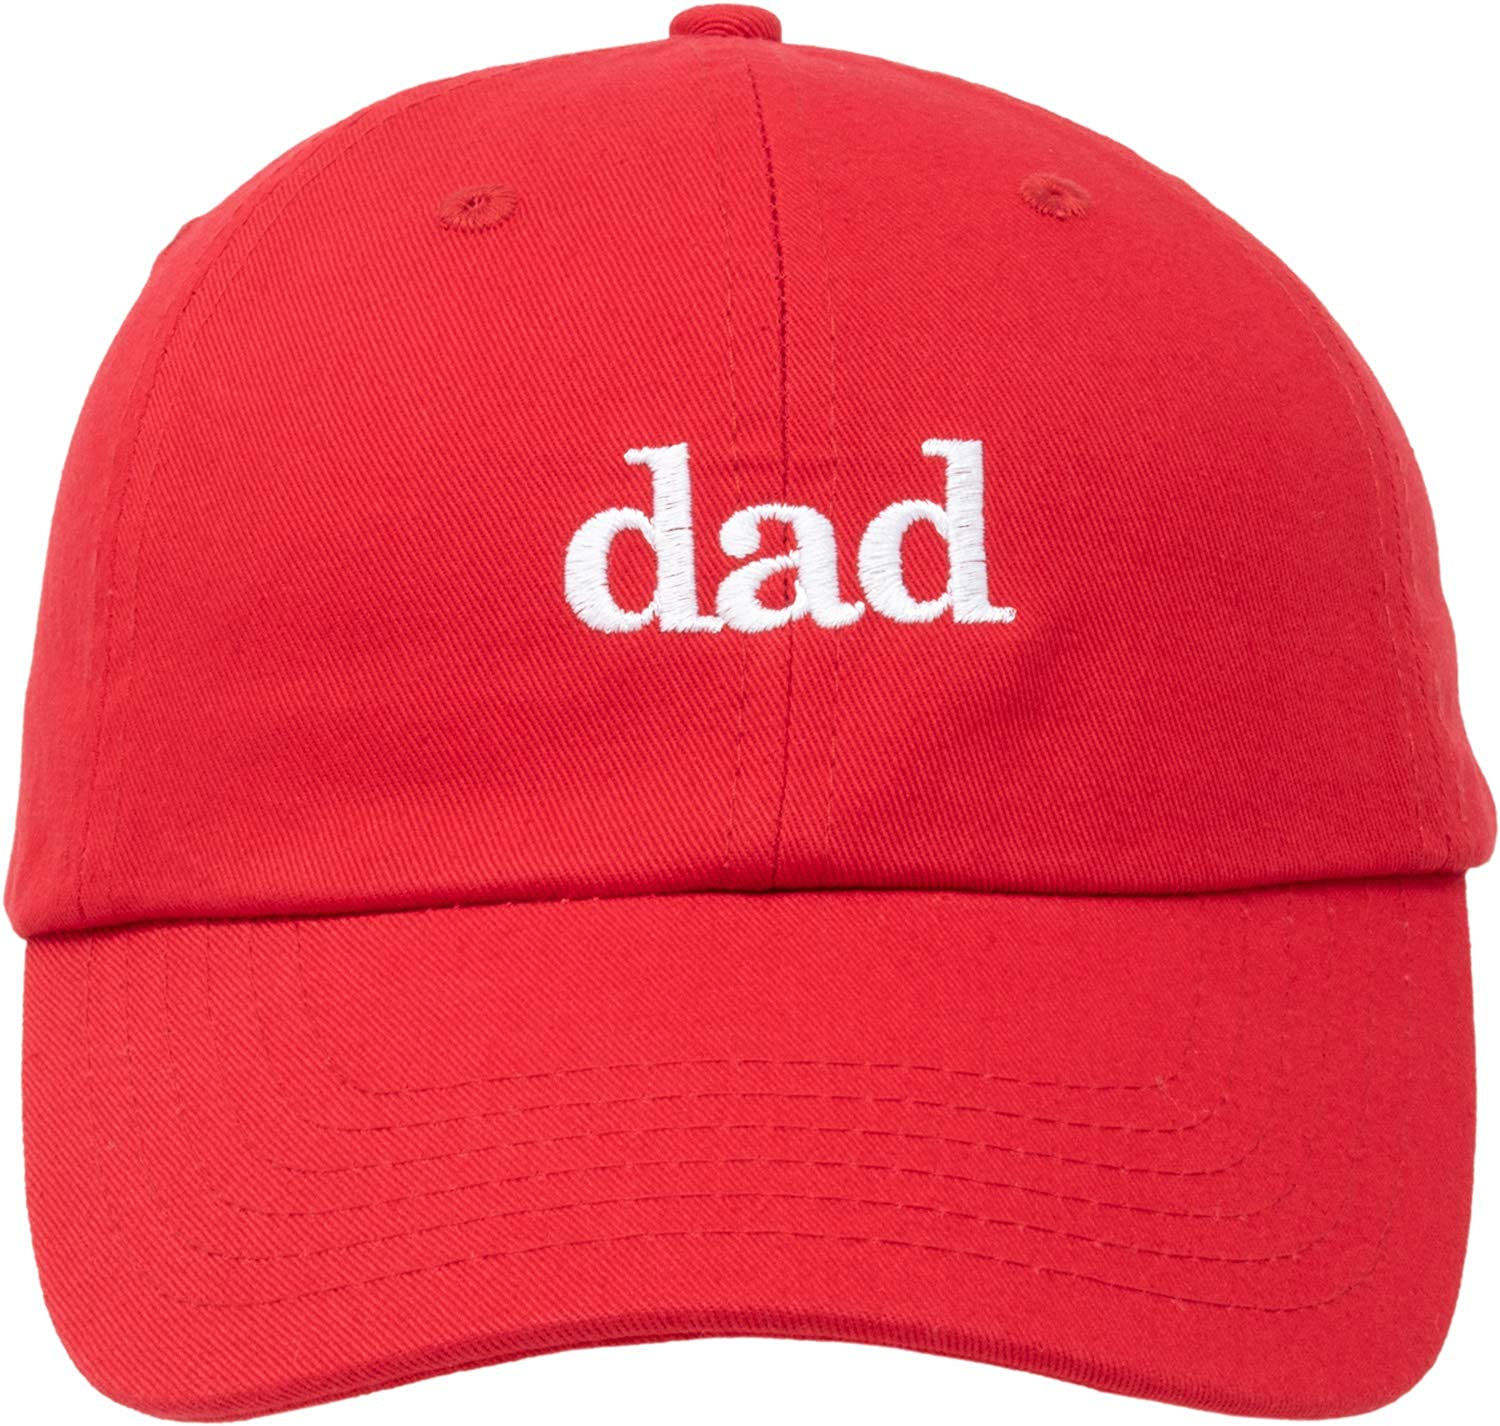 คูปองหมวกพ่อ